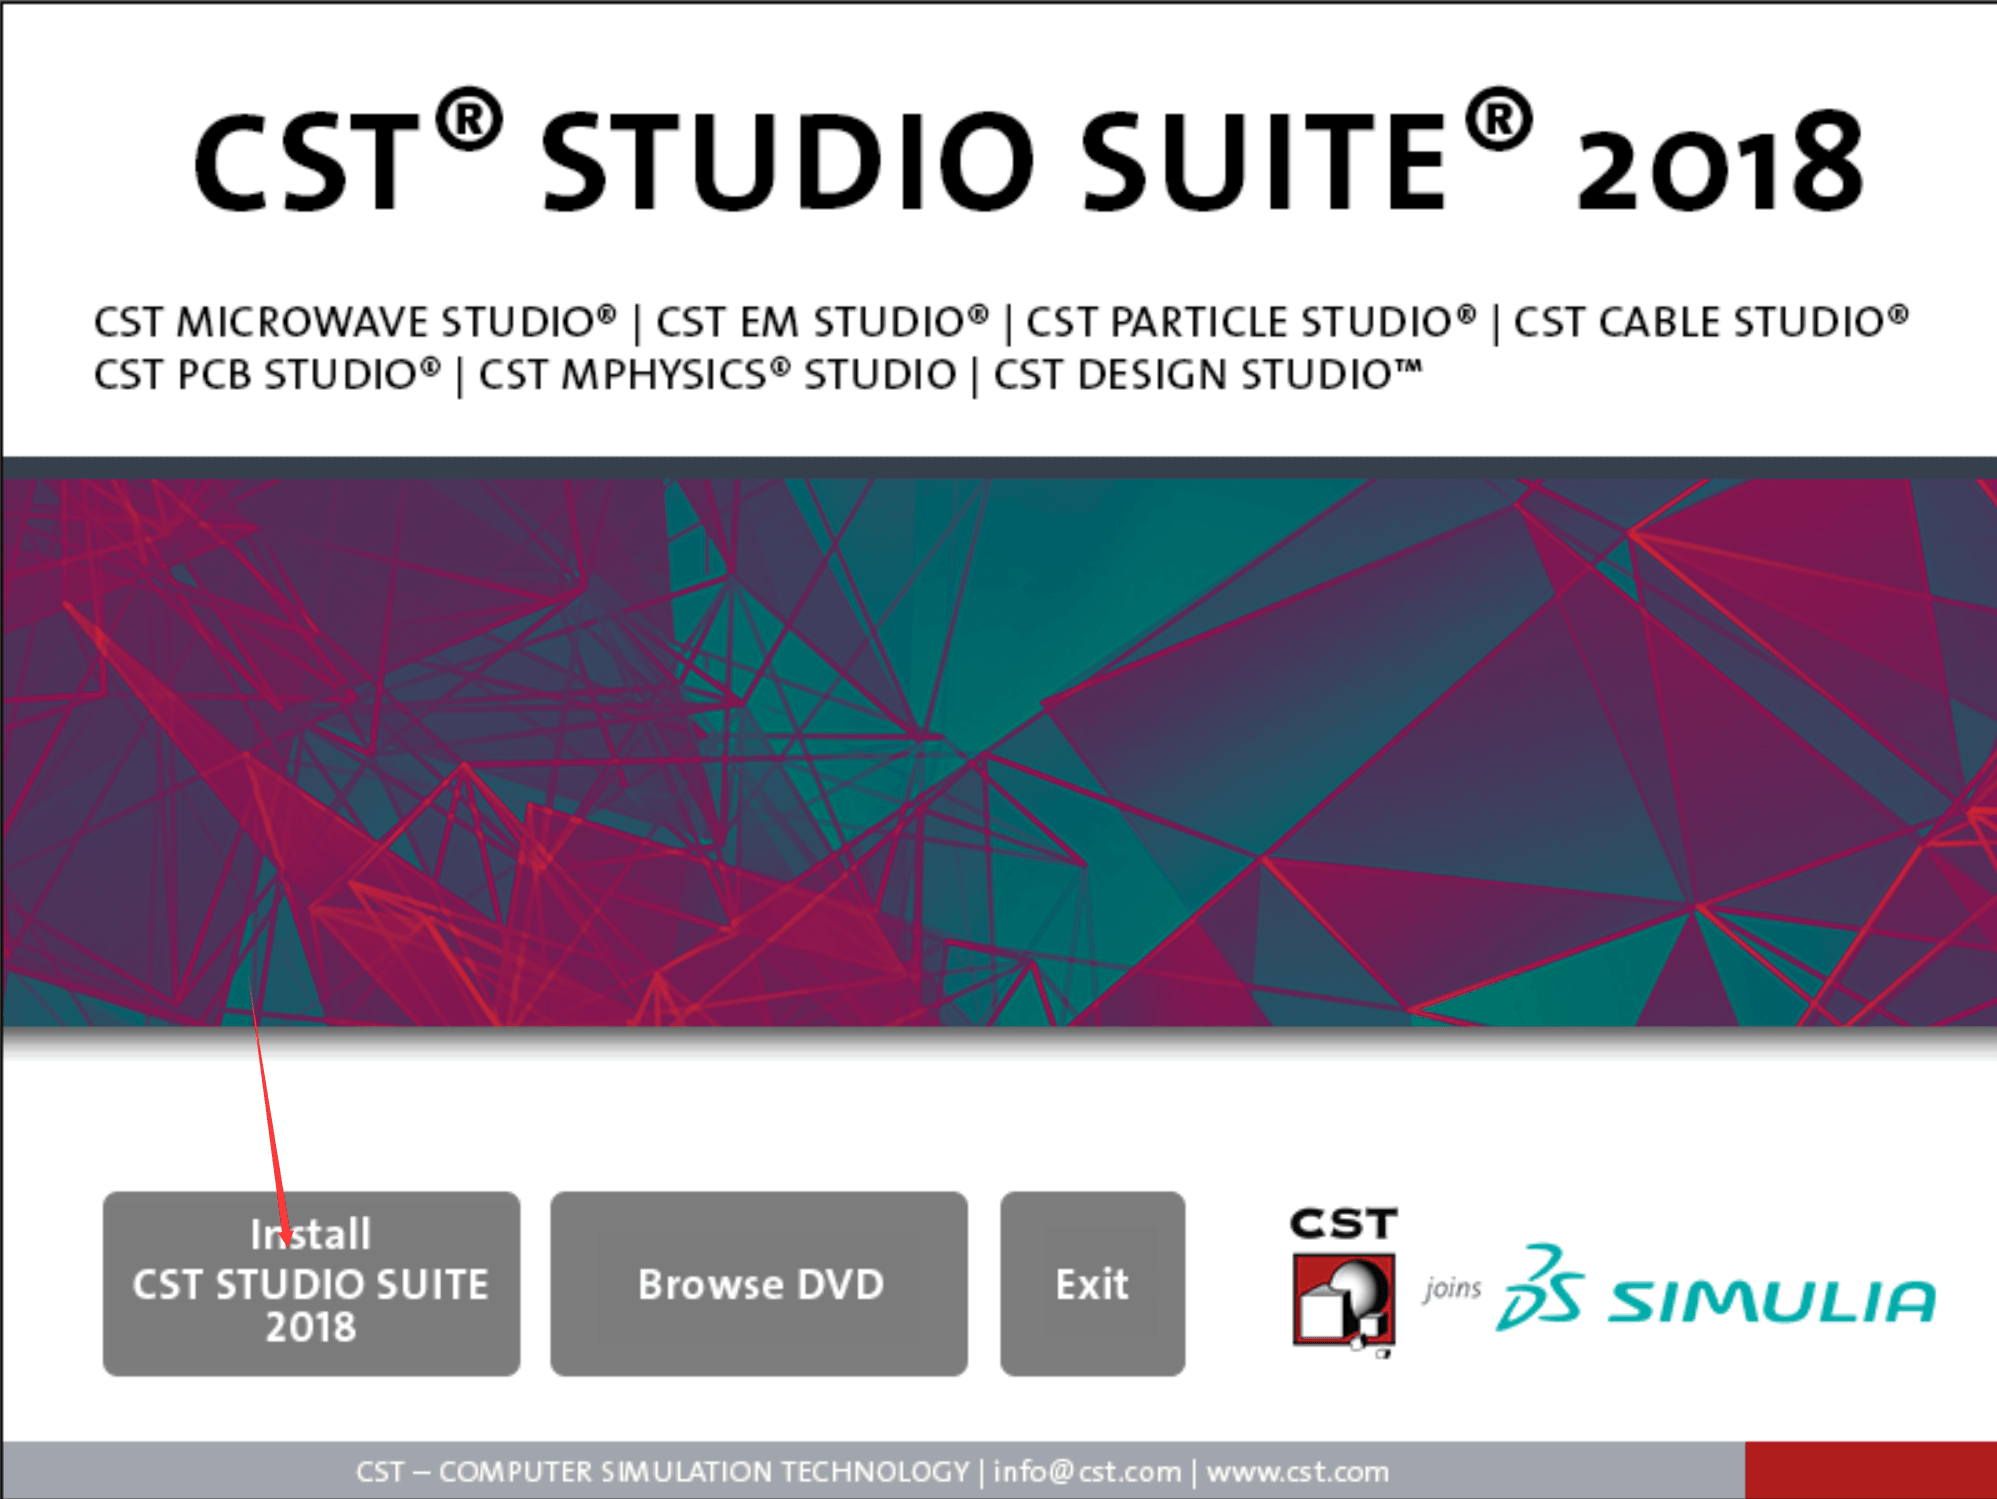 cst suite studio